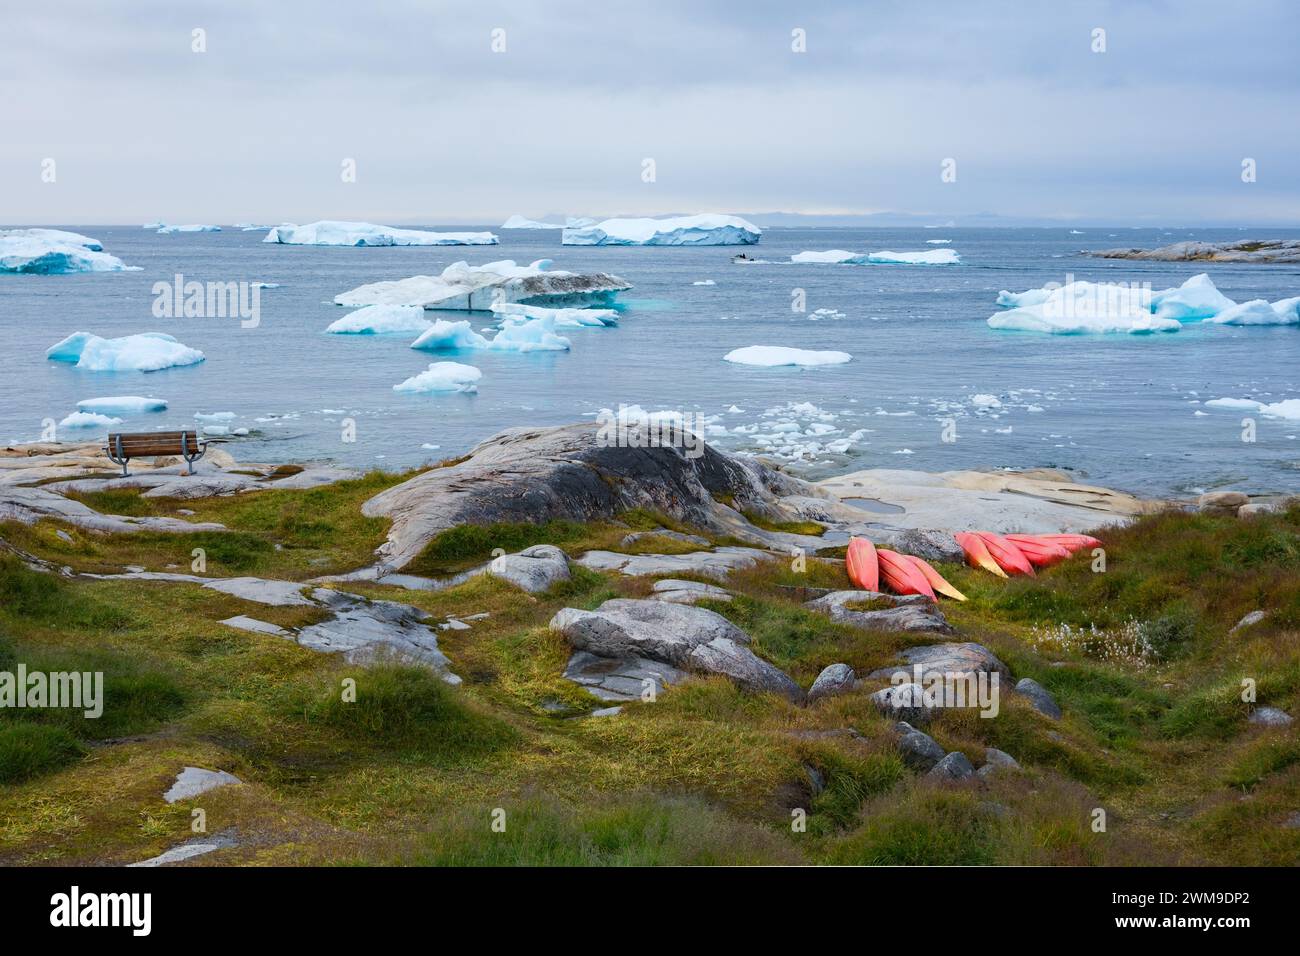 Ein Ort zum Ausruhen: Eine Bank mit Blick auf die Eisberge, die am Ufer schwimmen, und eine Ansammlung roter Kajaks. Illulisat, Grönland. Stockfoto